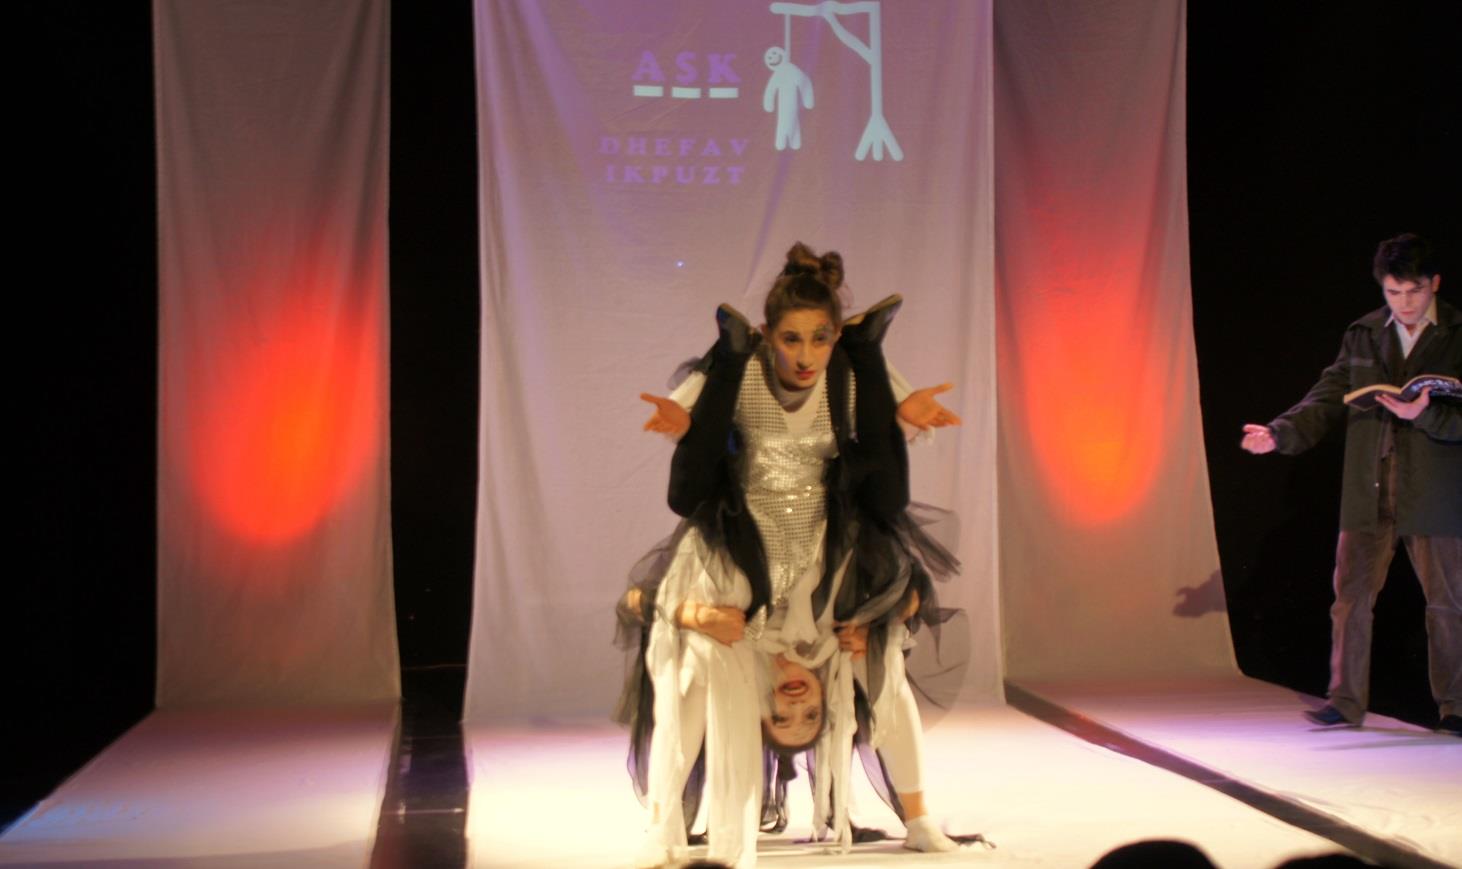 Hacettepe Üniversitesi Drama Topluluğu mezun tiyatrosu olarak kurulan Yakın Tiyatro, ilk oyunu olan Matmazel Julie yi 2008 yılı Kasım ayında sergilemeye başlamıştır.